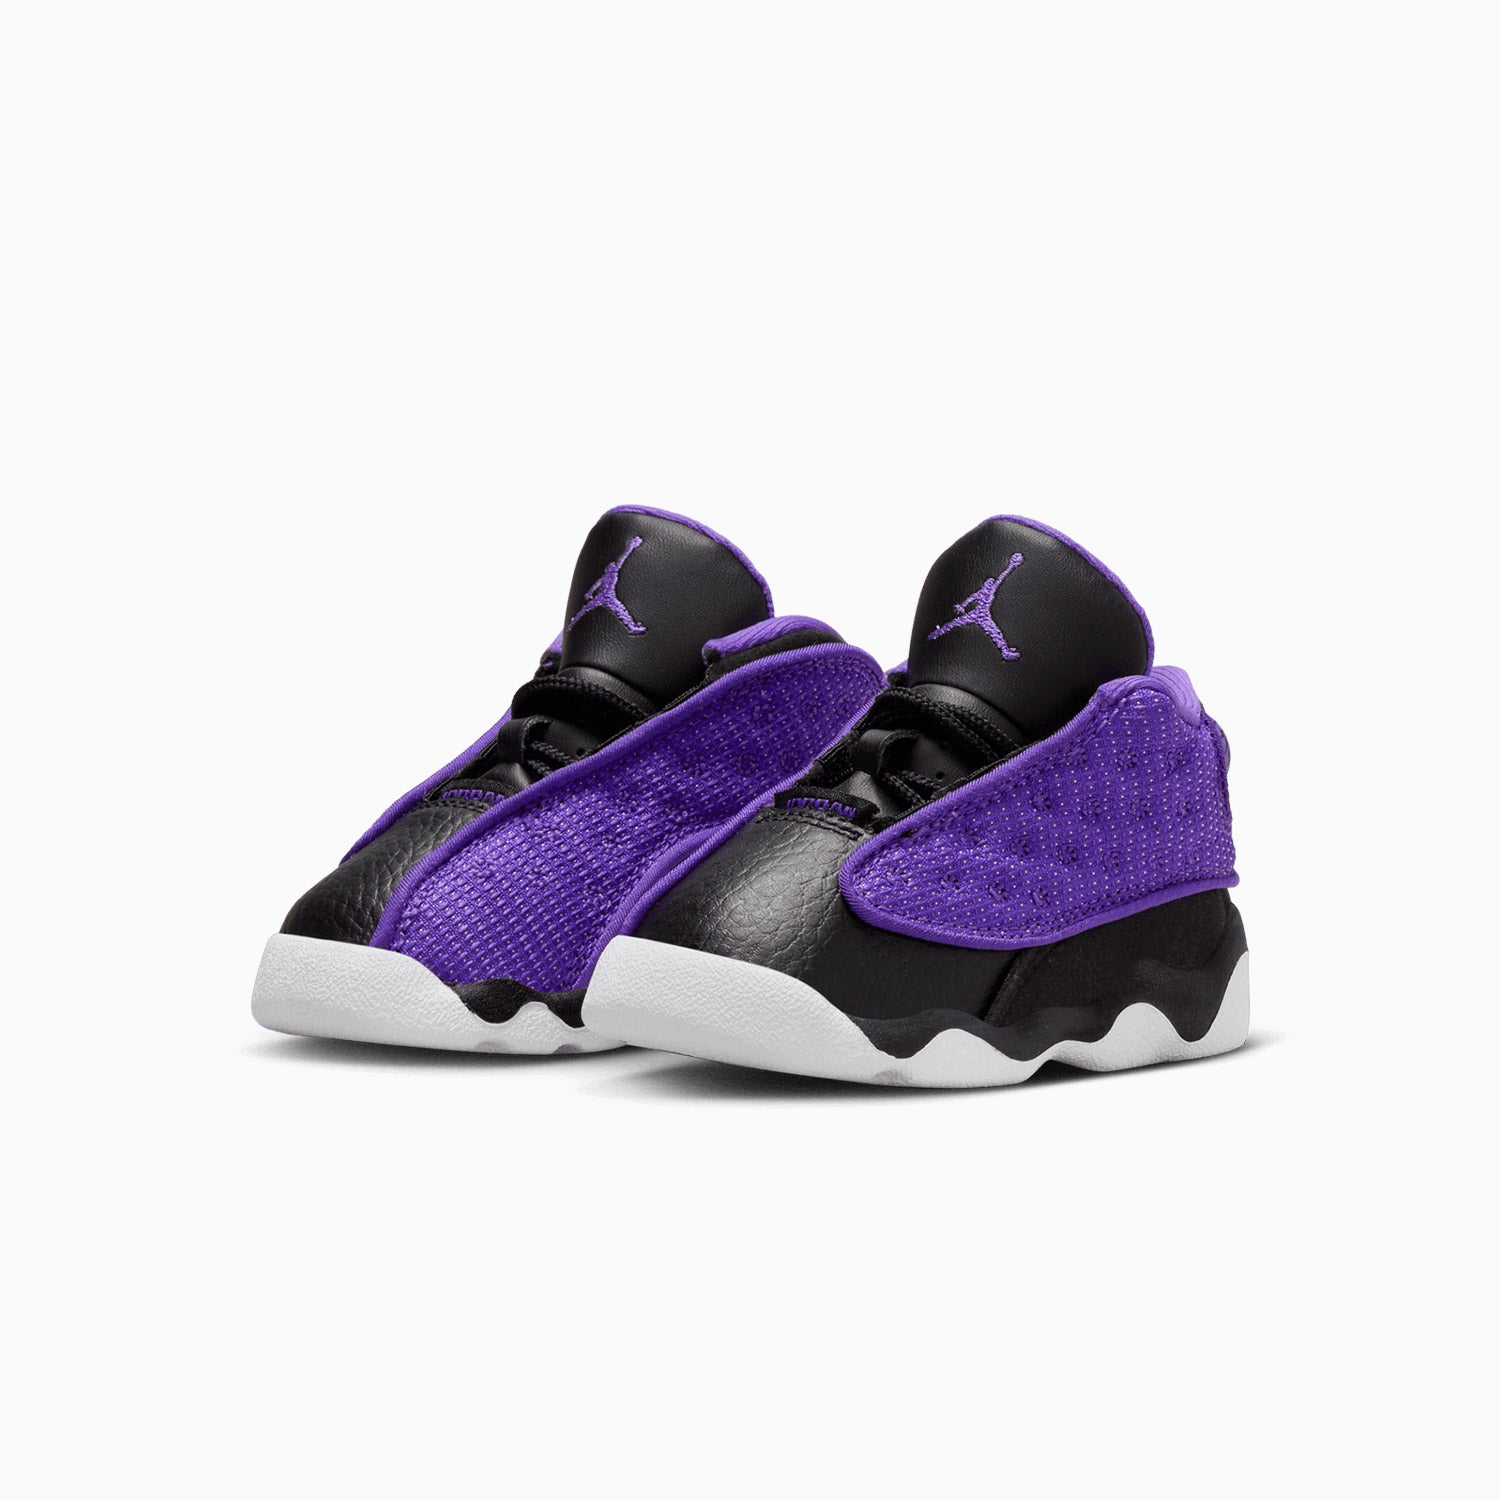 jordan-kids-air-jordan-13-retro-purple-venom-toddlers-fd4647-501